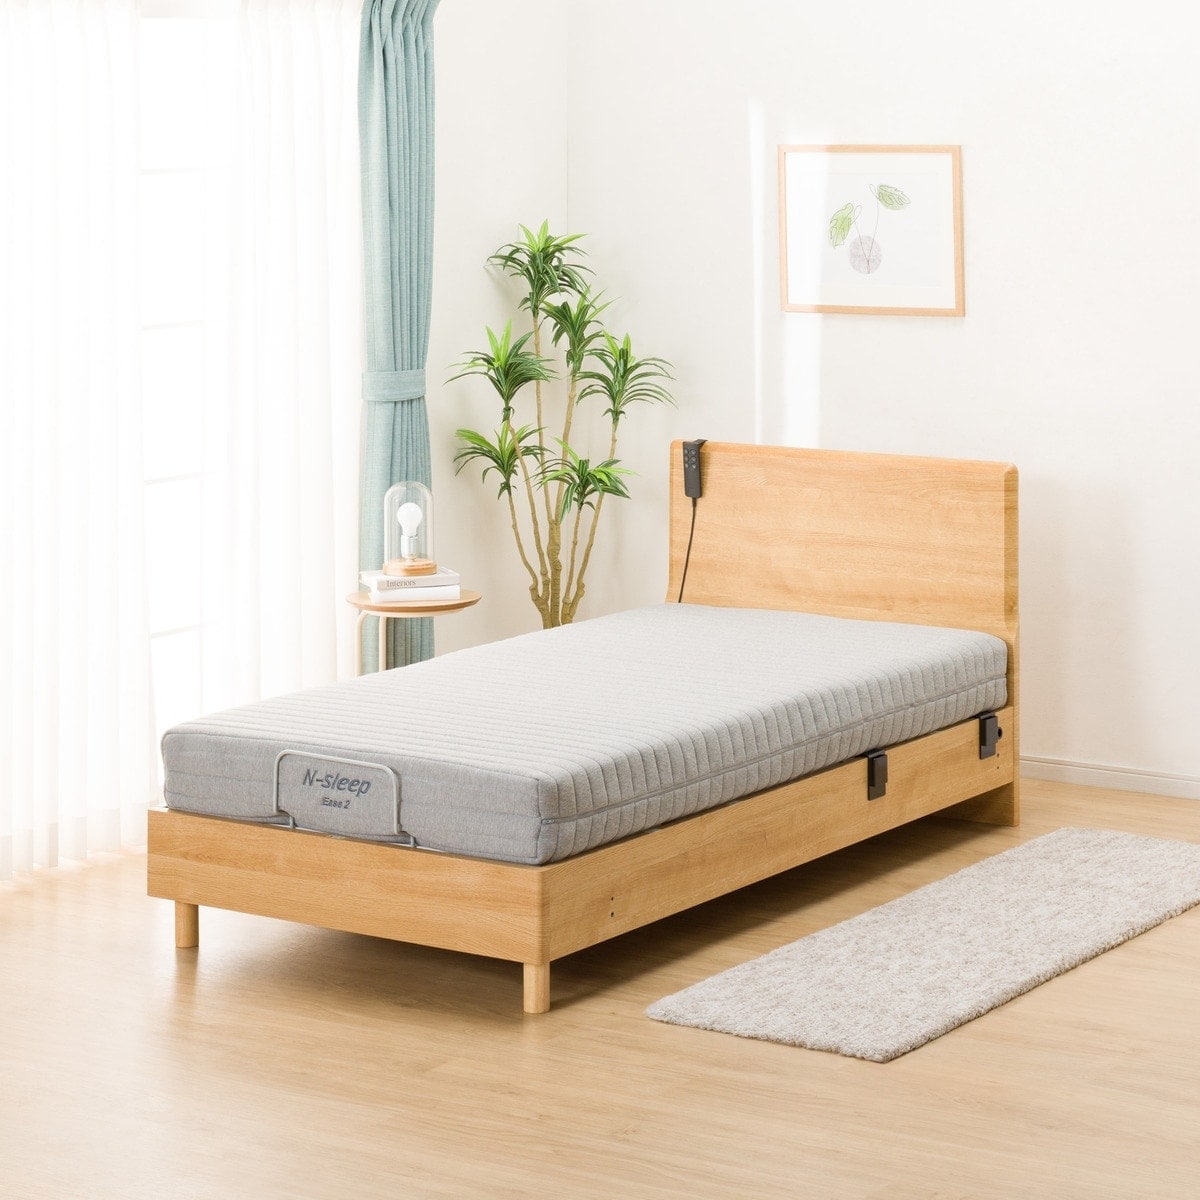 ニトリ ベッドセット フレーム マットレス シングルサイズ 寝具 A0024 